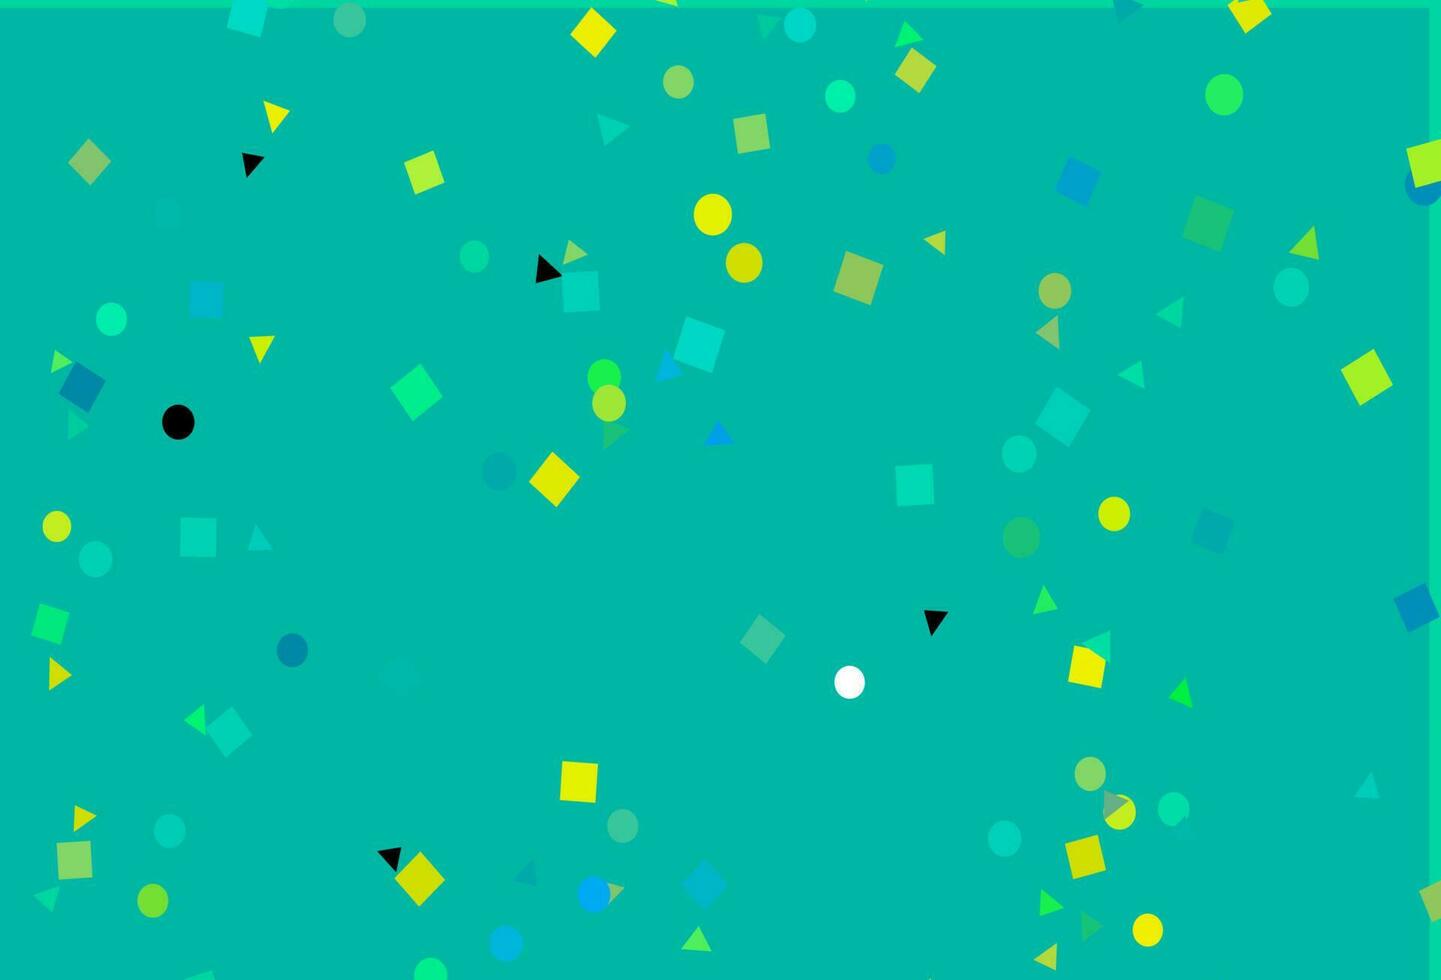 modelo de vetor azul claro, amarelo com cristais, círculos, quadrados.